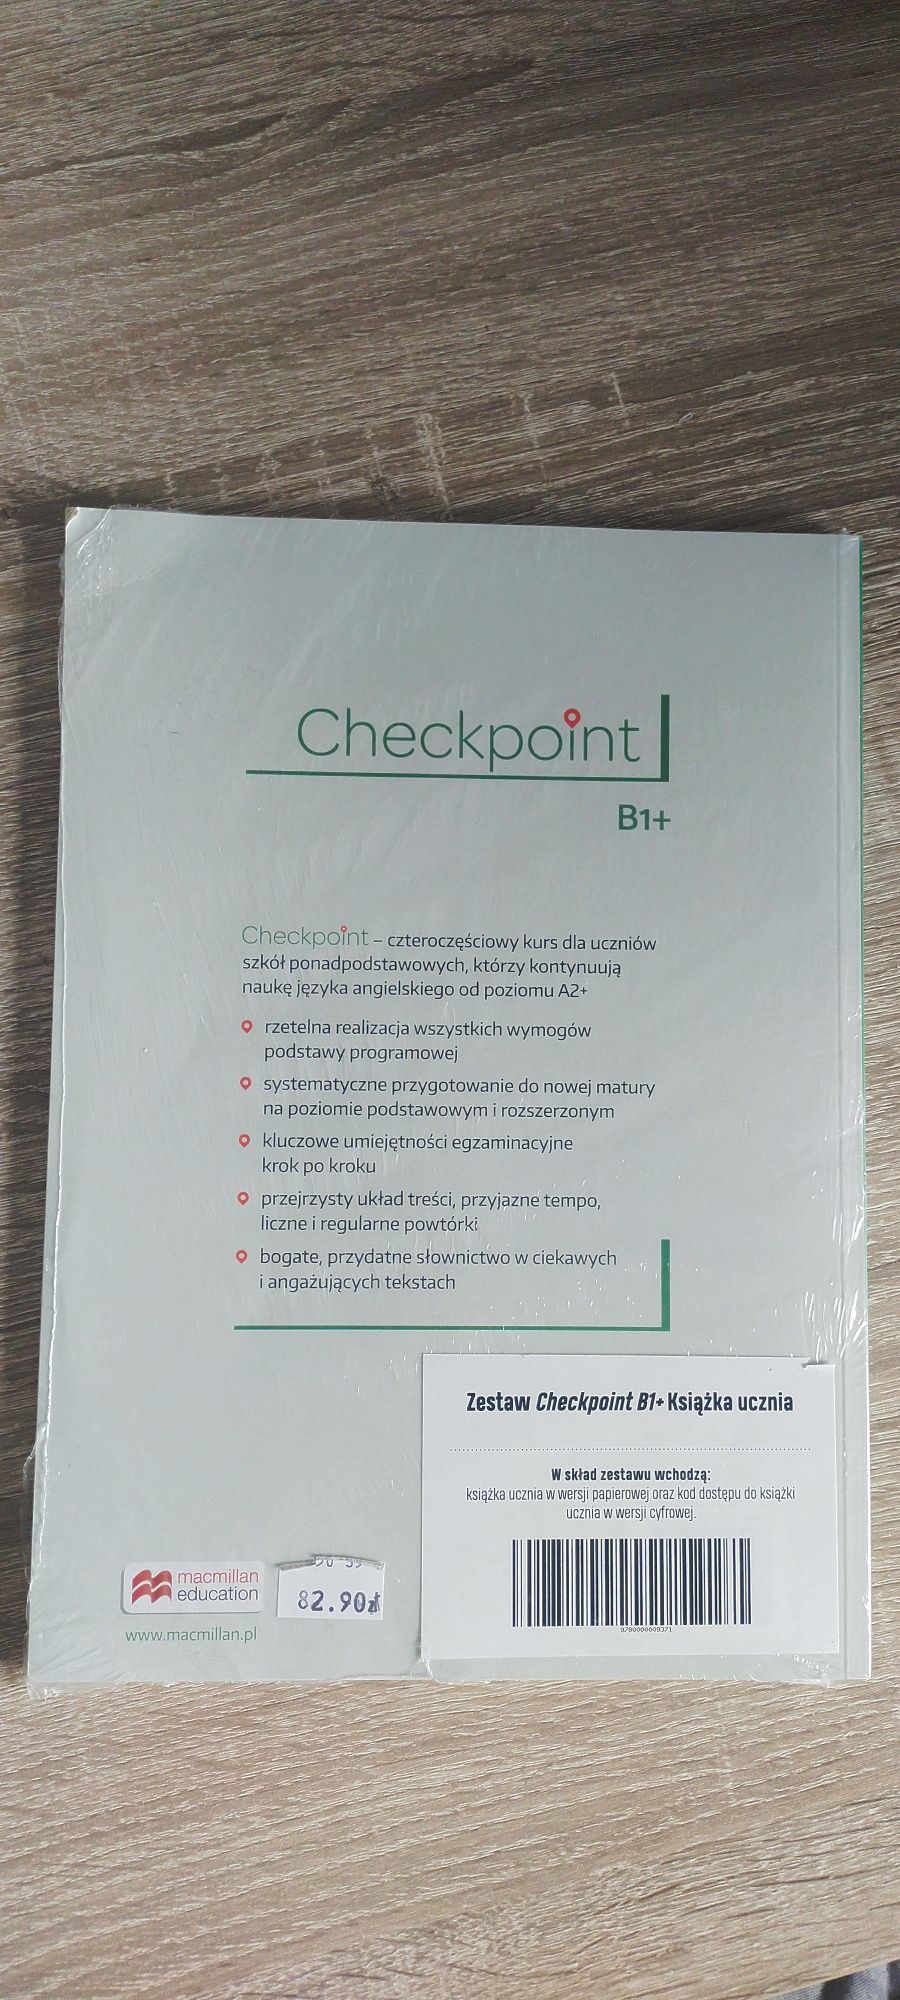 Podręcznik do J. angielskiego "Checkpoint B1+"